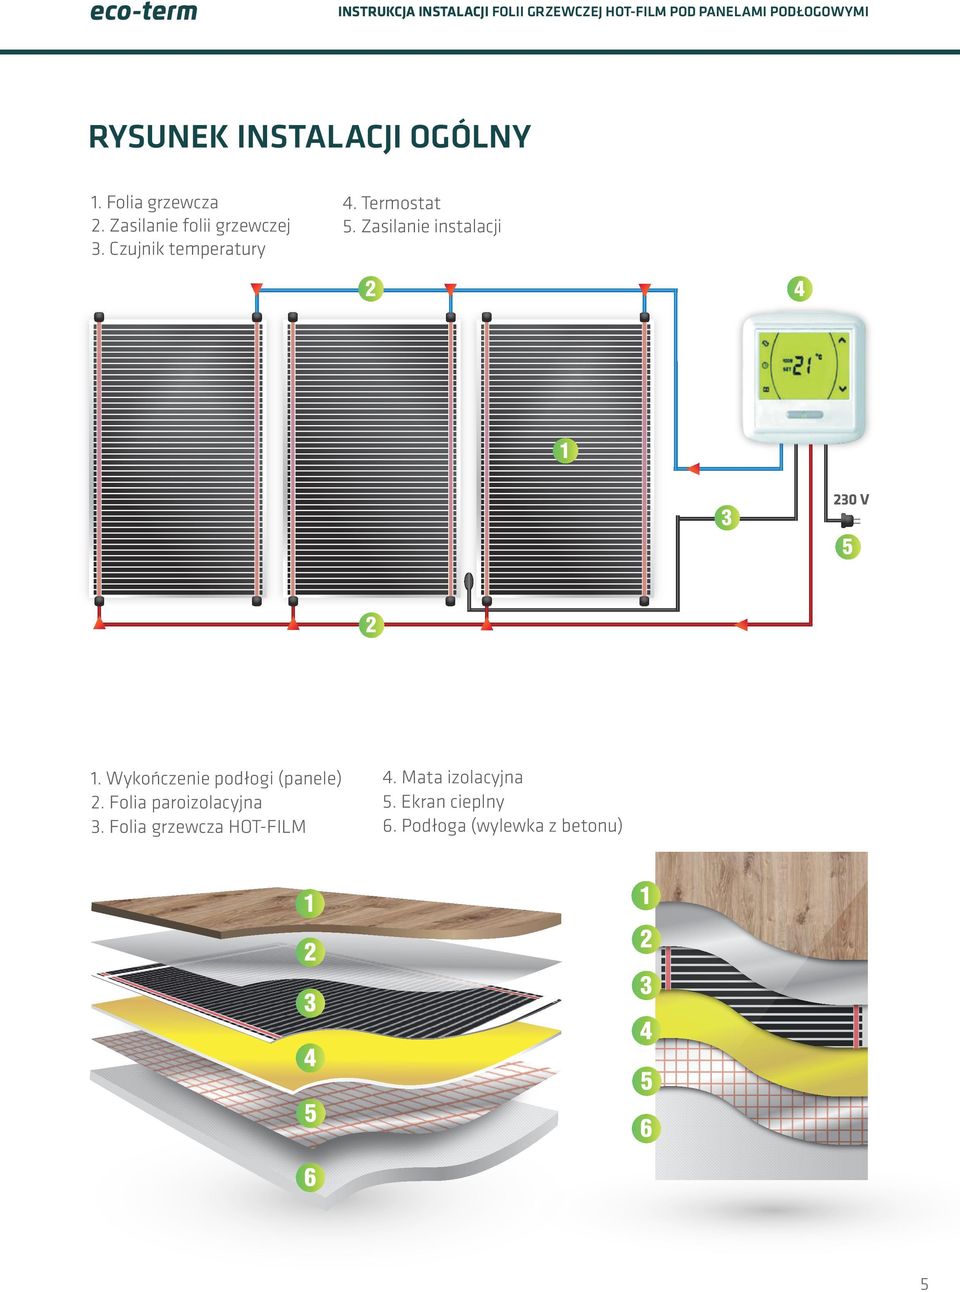 Zasilanie instalacji 0 V. Wykończenie podłogi (panele).